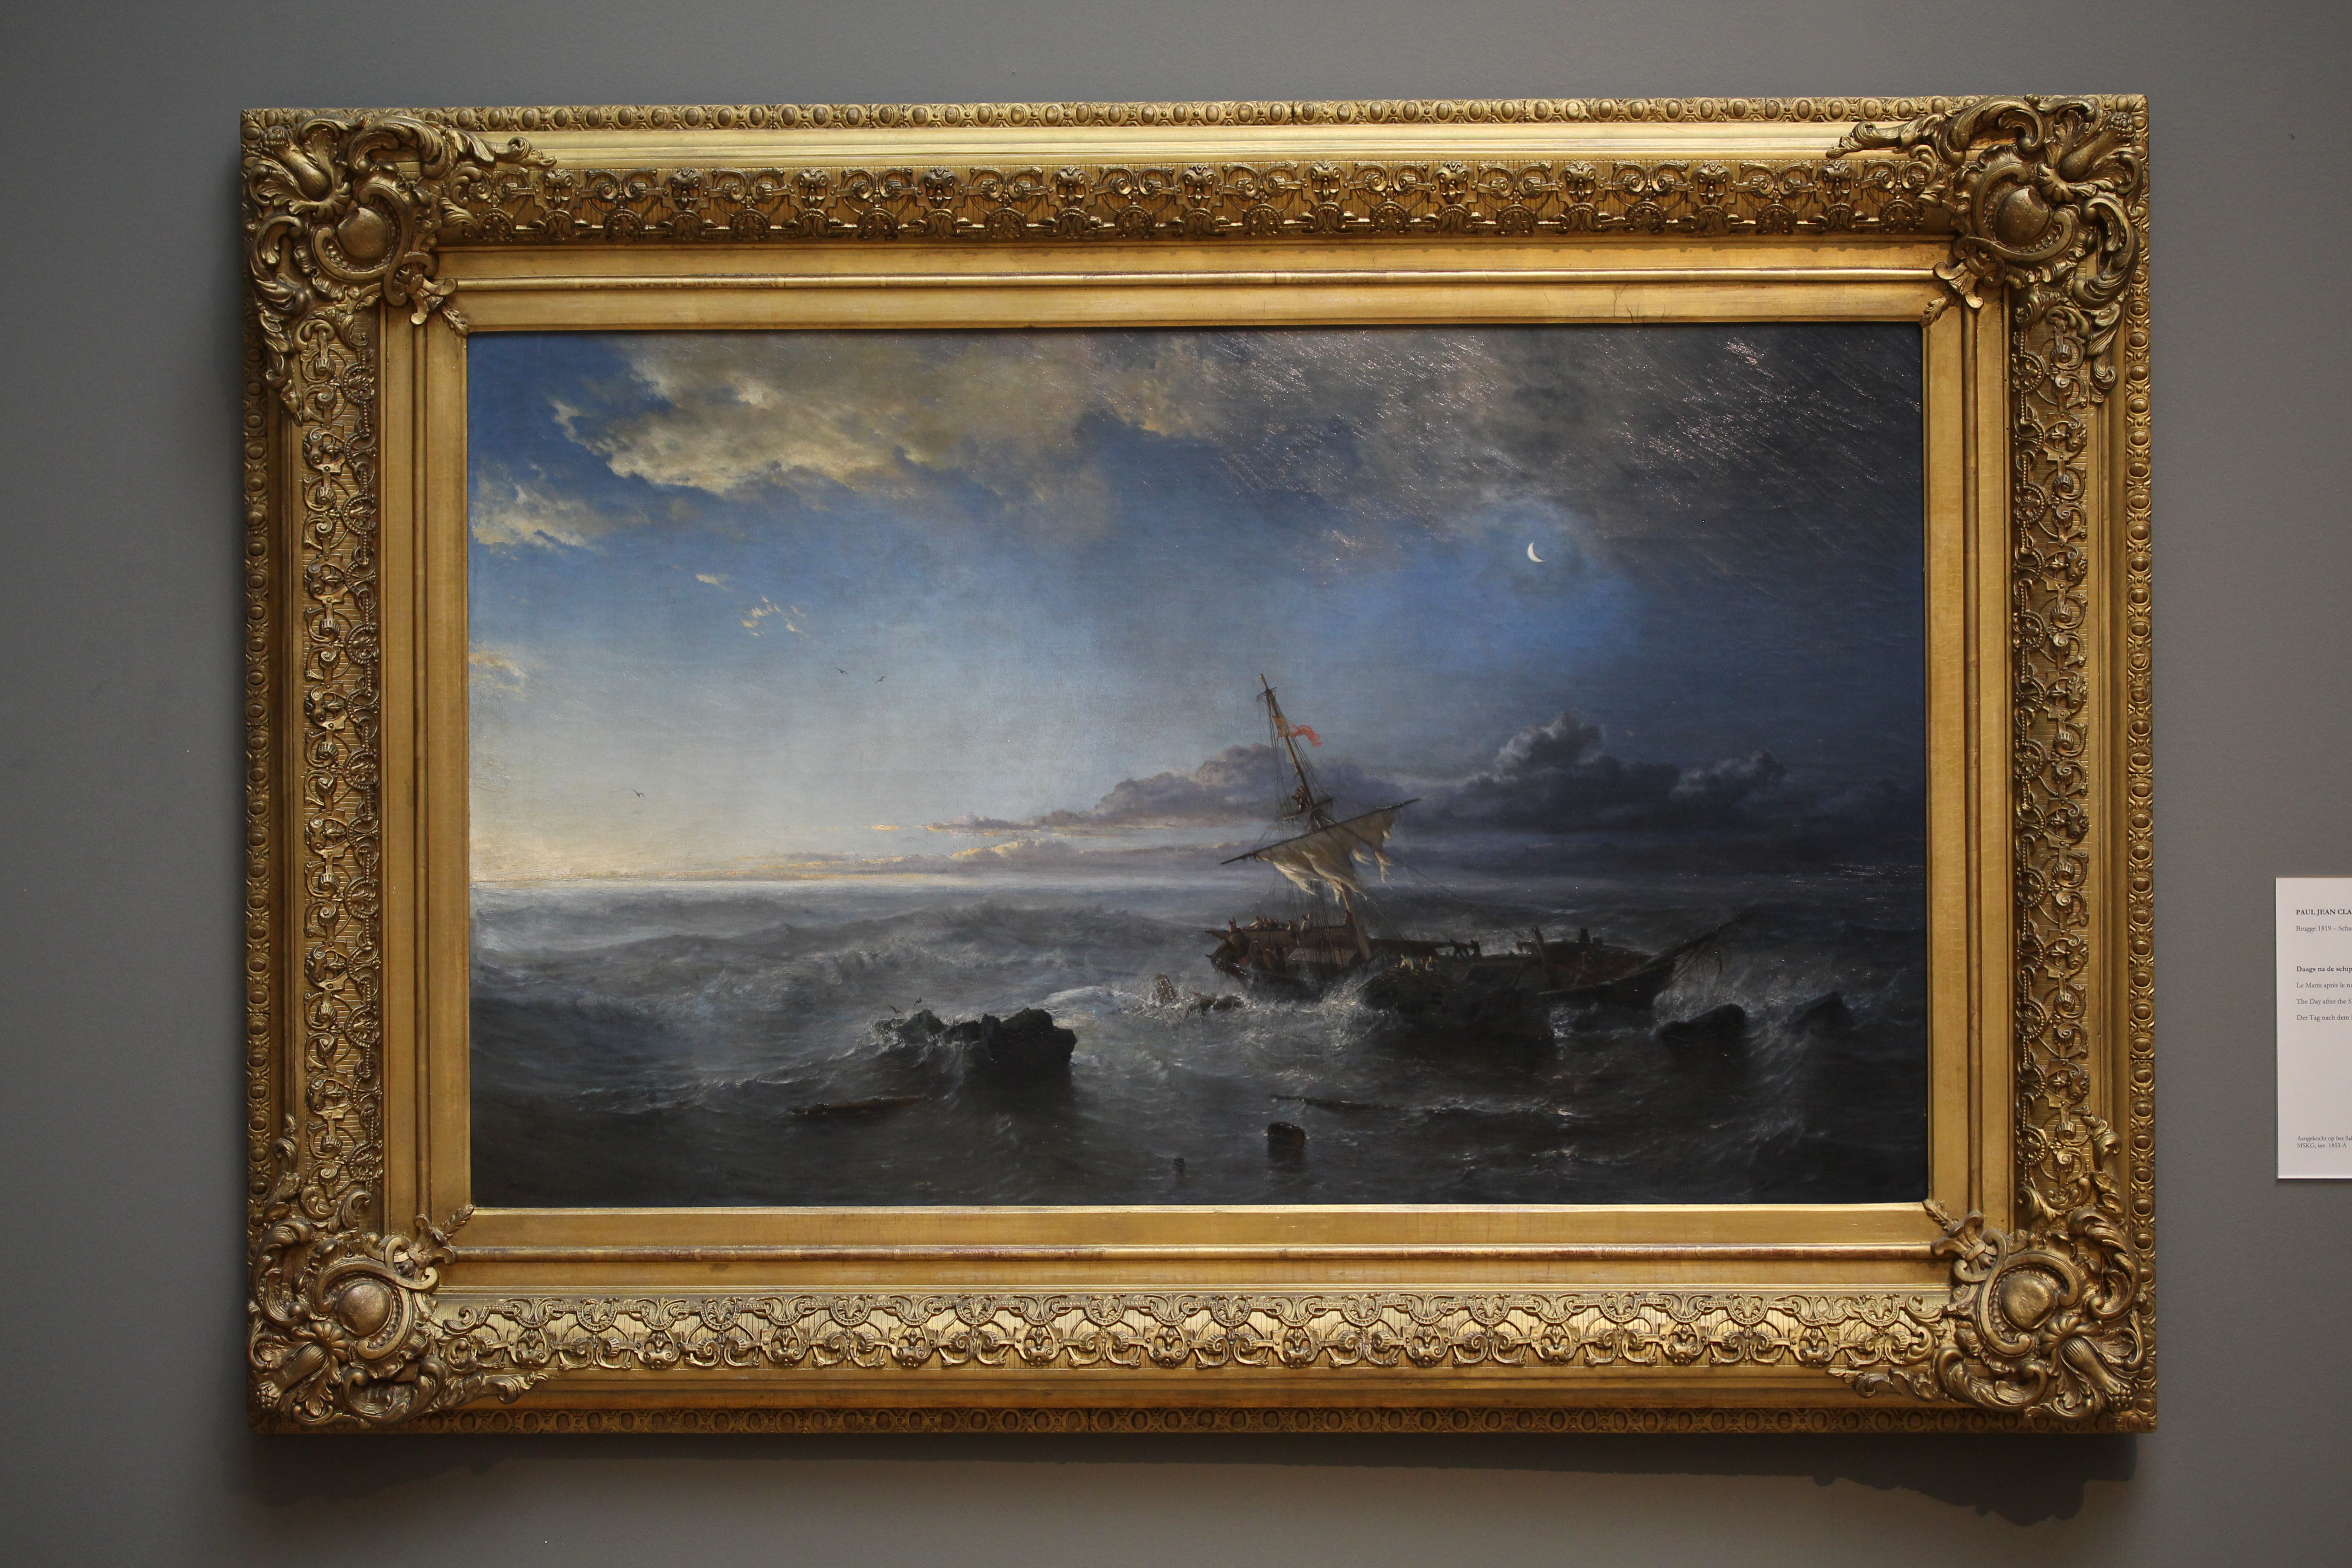 File:Wiki Loves Art - Gent - Museum voor Kunsten - Daags na schipbreuk (Q21673086).JPG - Wikimedia Commons